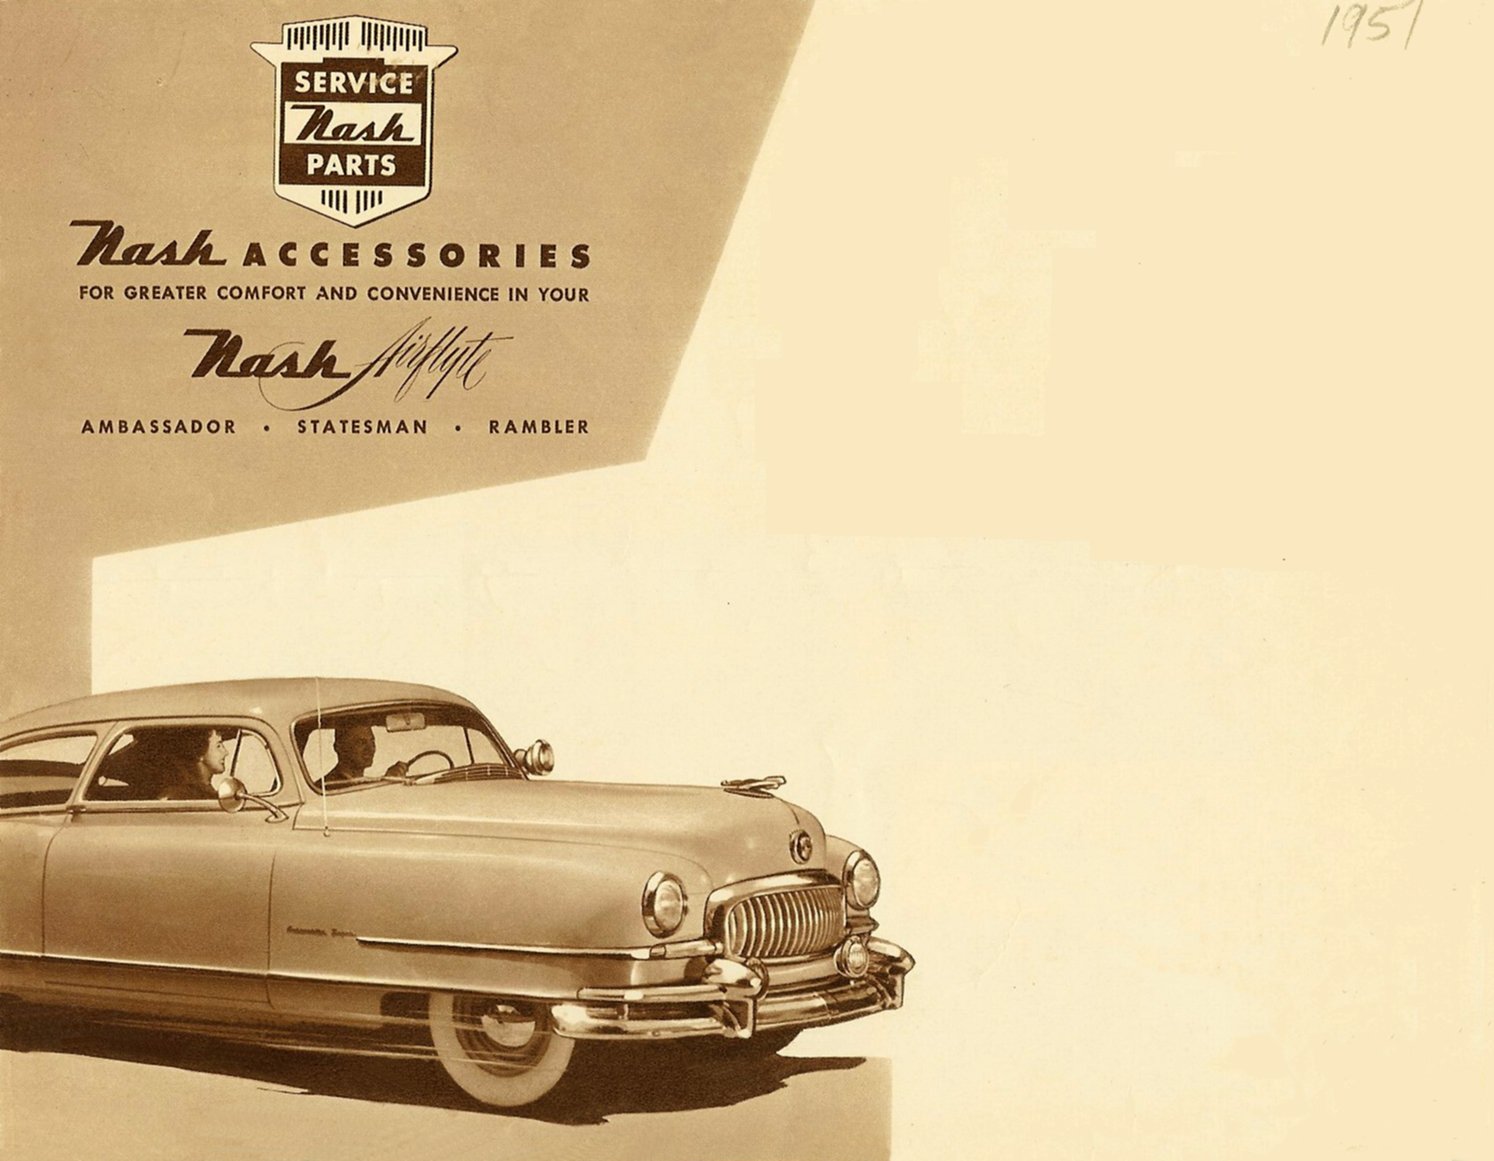 1951 Nash Accessories Folder-01